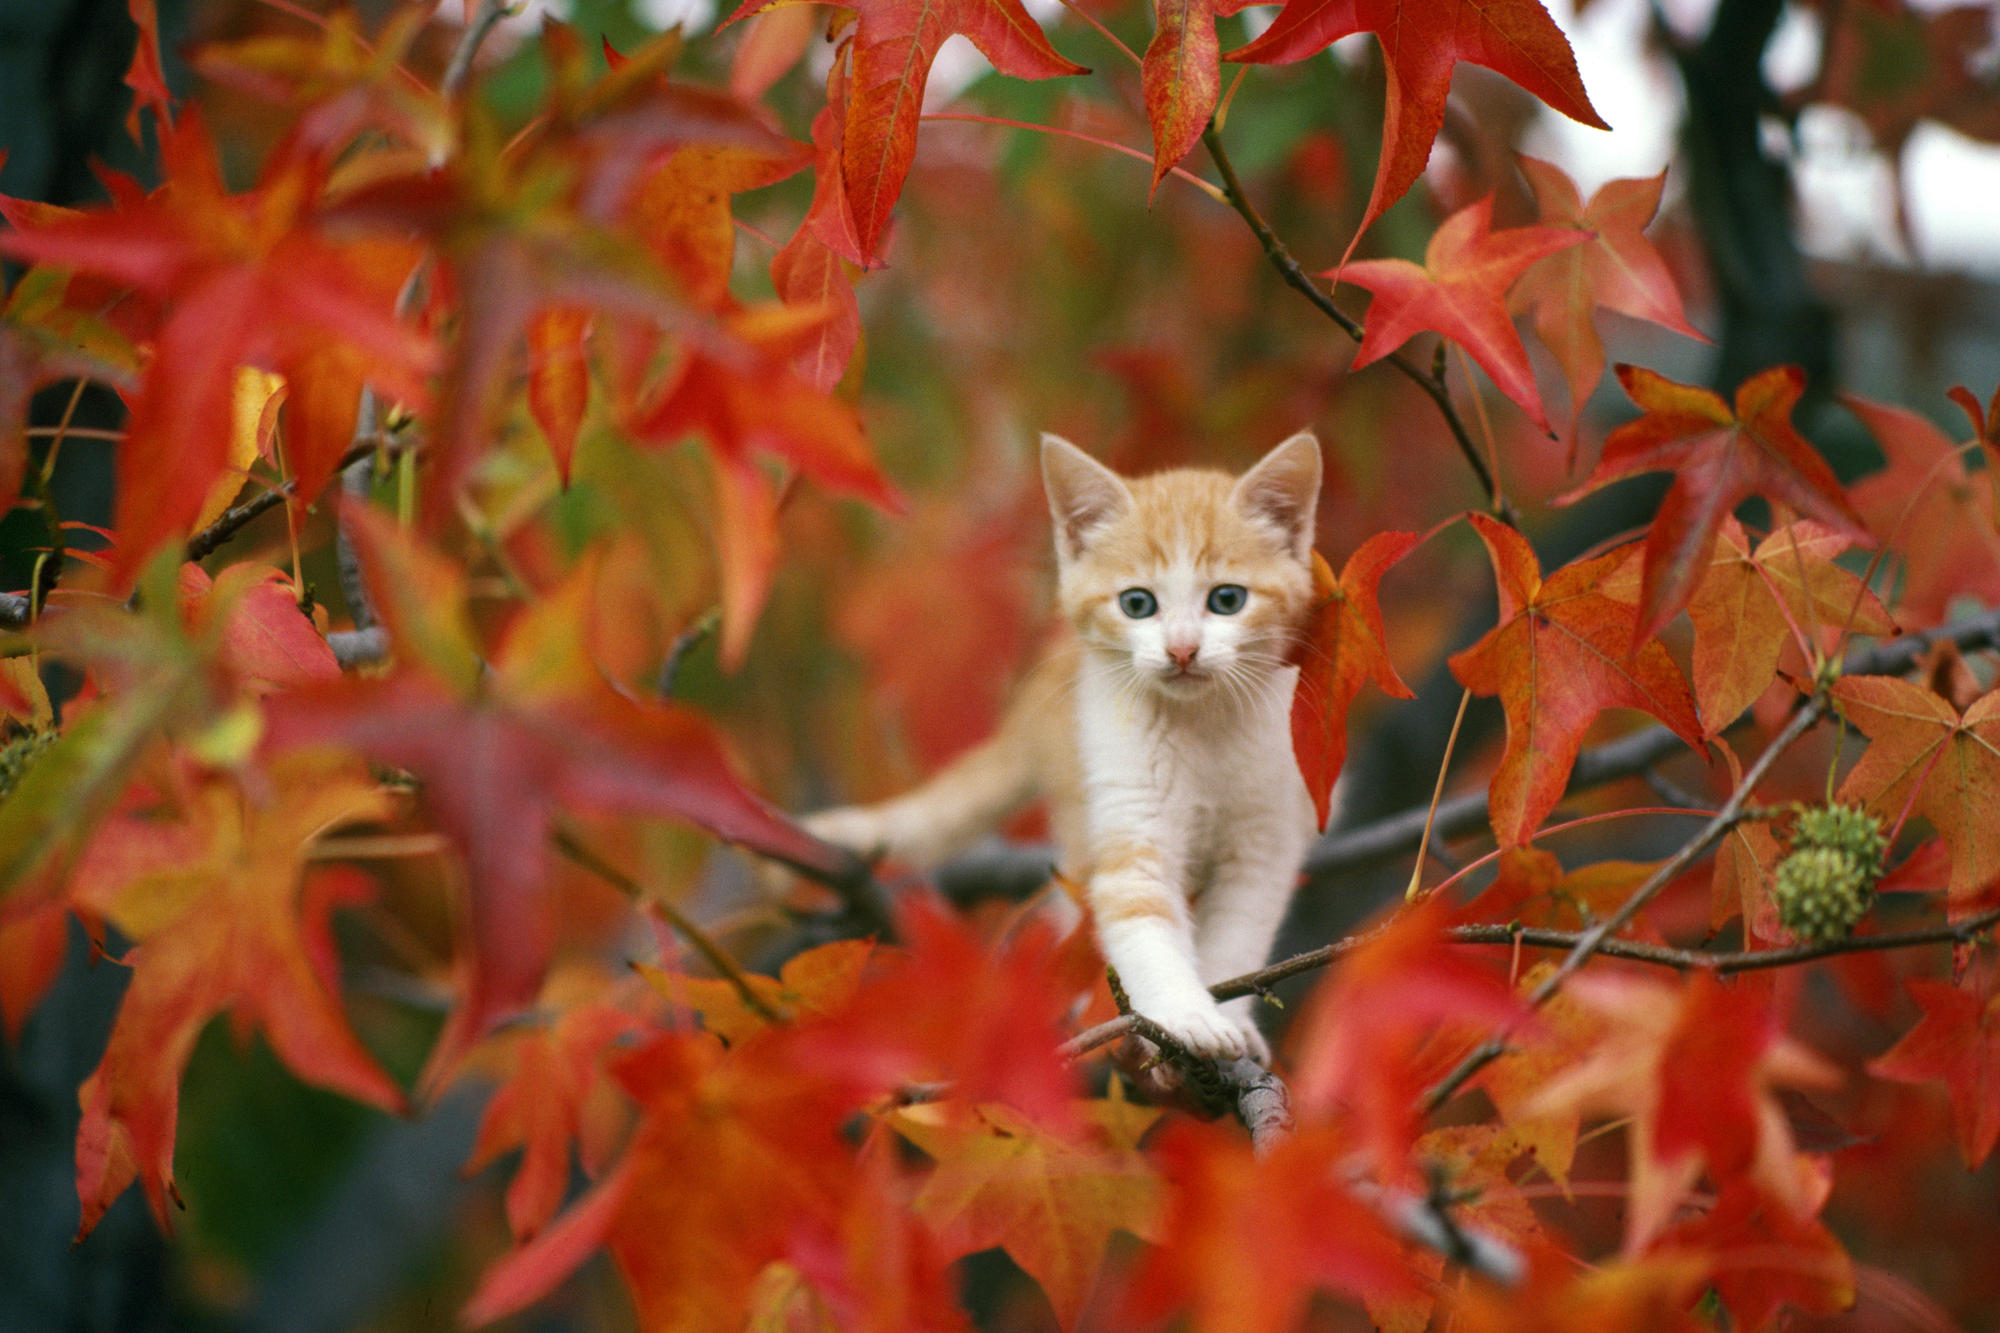 170485 免費下載壁紙 动物, 猫, 小动物, 秋季, 姜猫, 小猫, 叶子 屏保和圖片